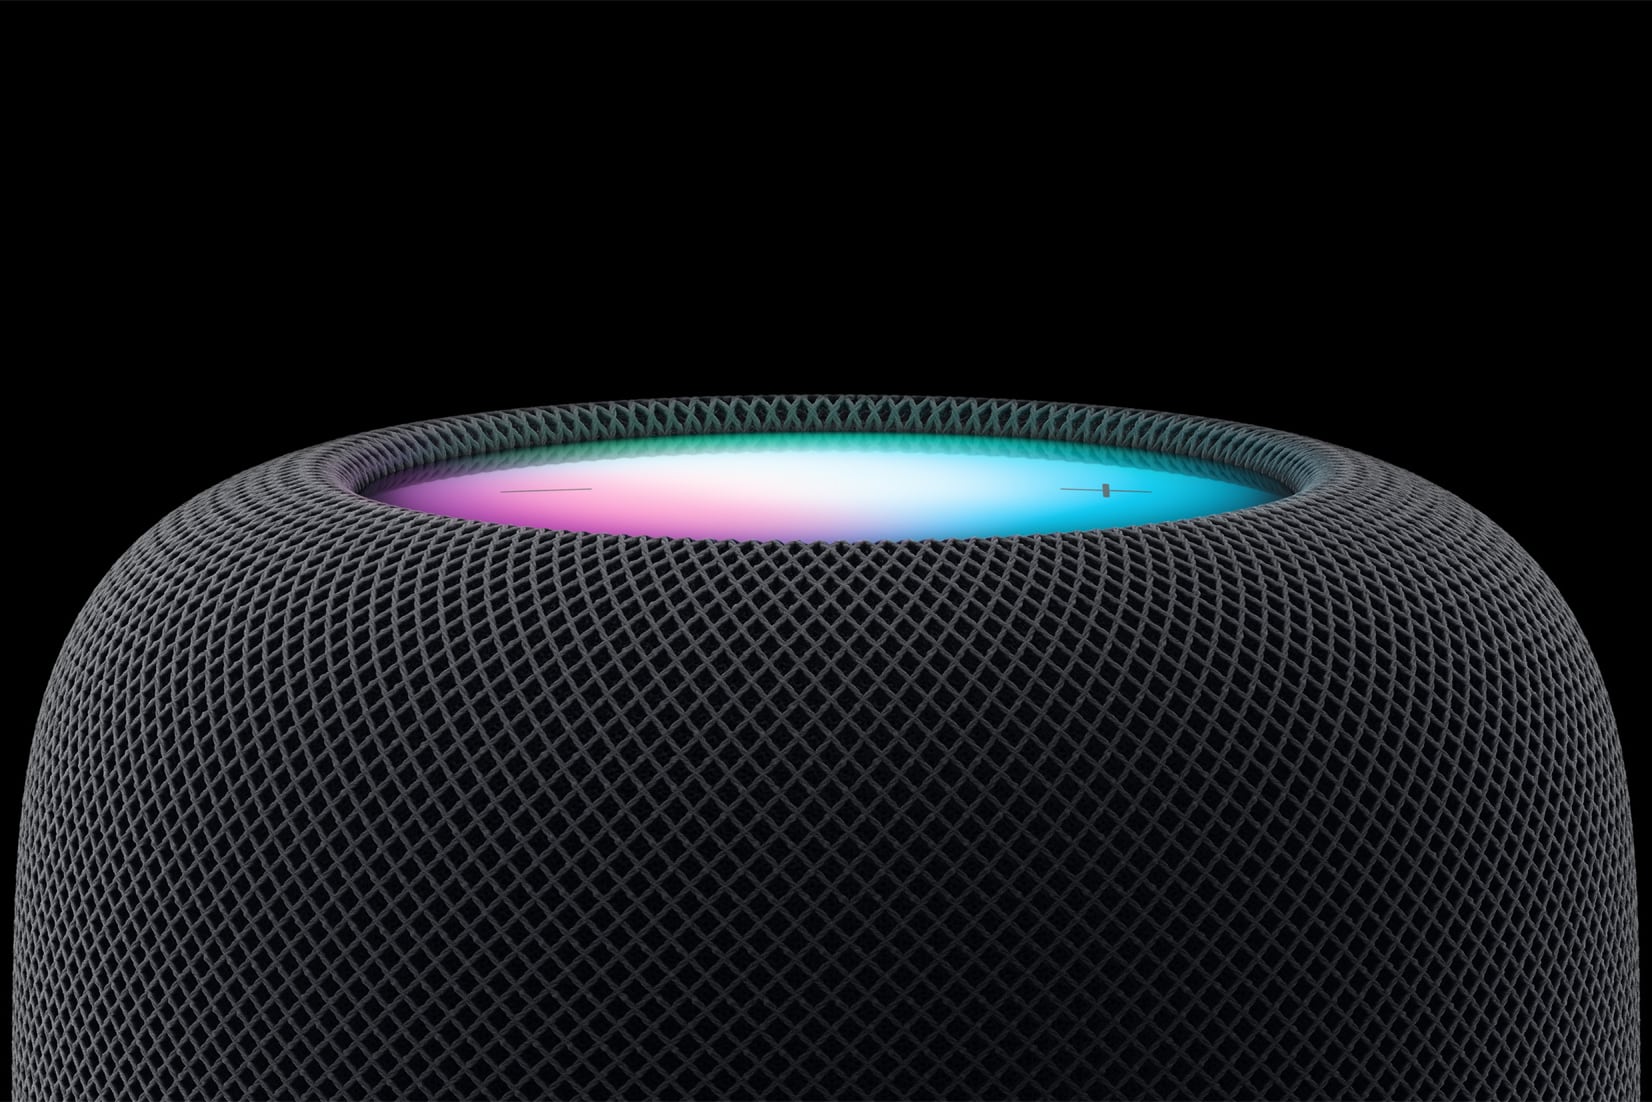 Apple представила новую HomePod 2-го поколения с улучшенным звуком